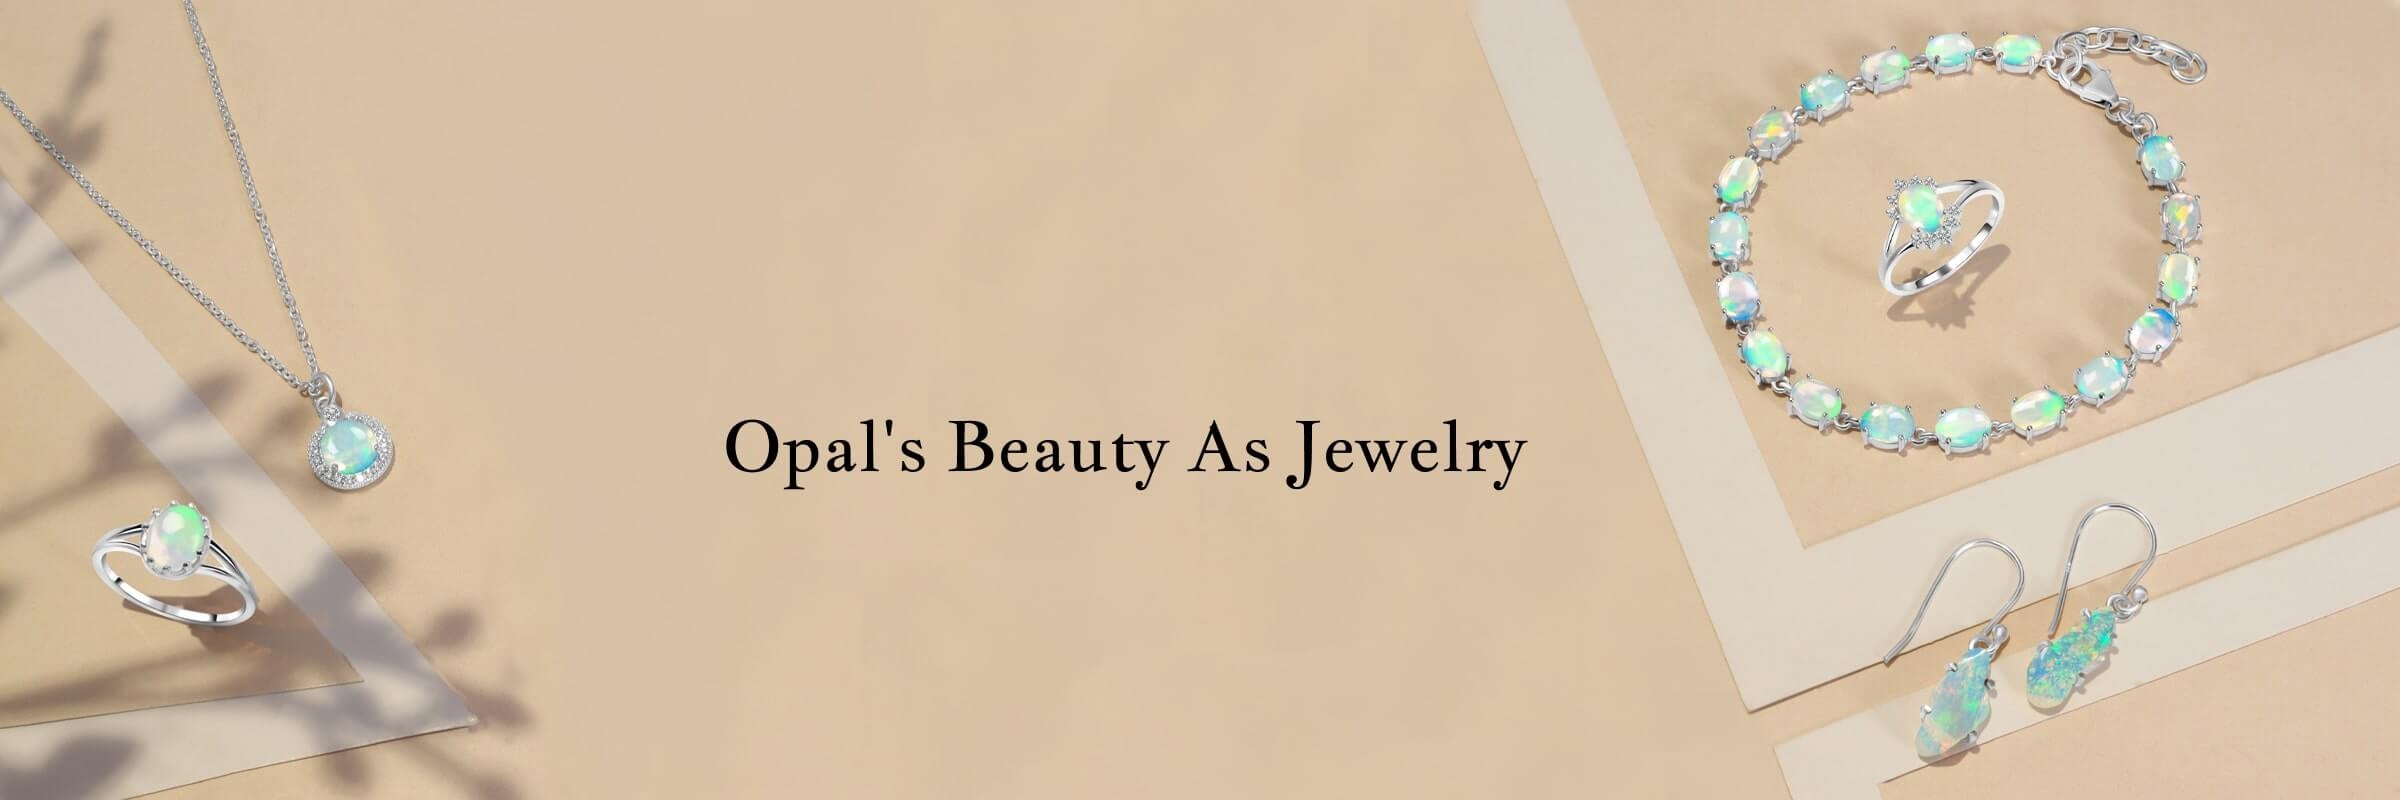 Opal's Beauty As Jewelry